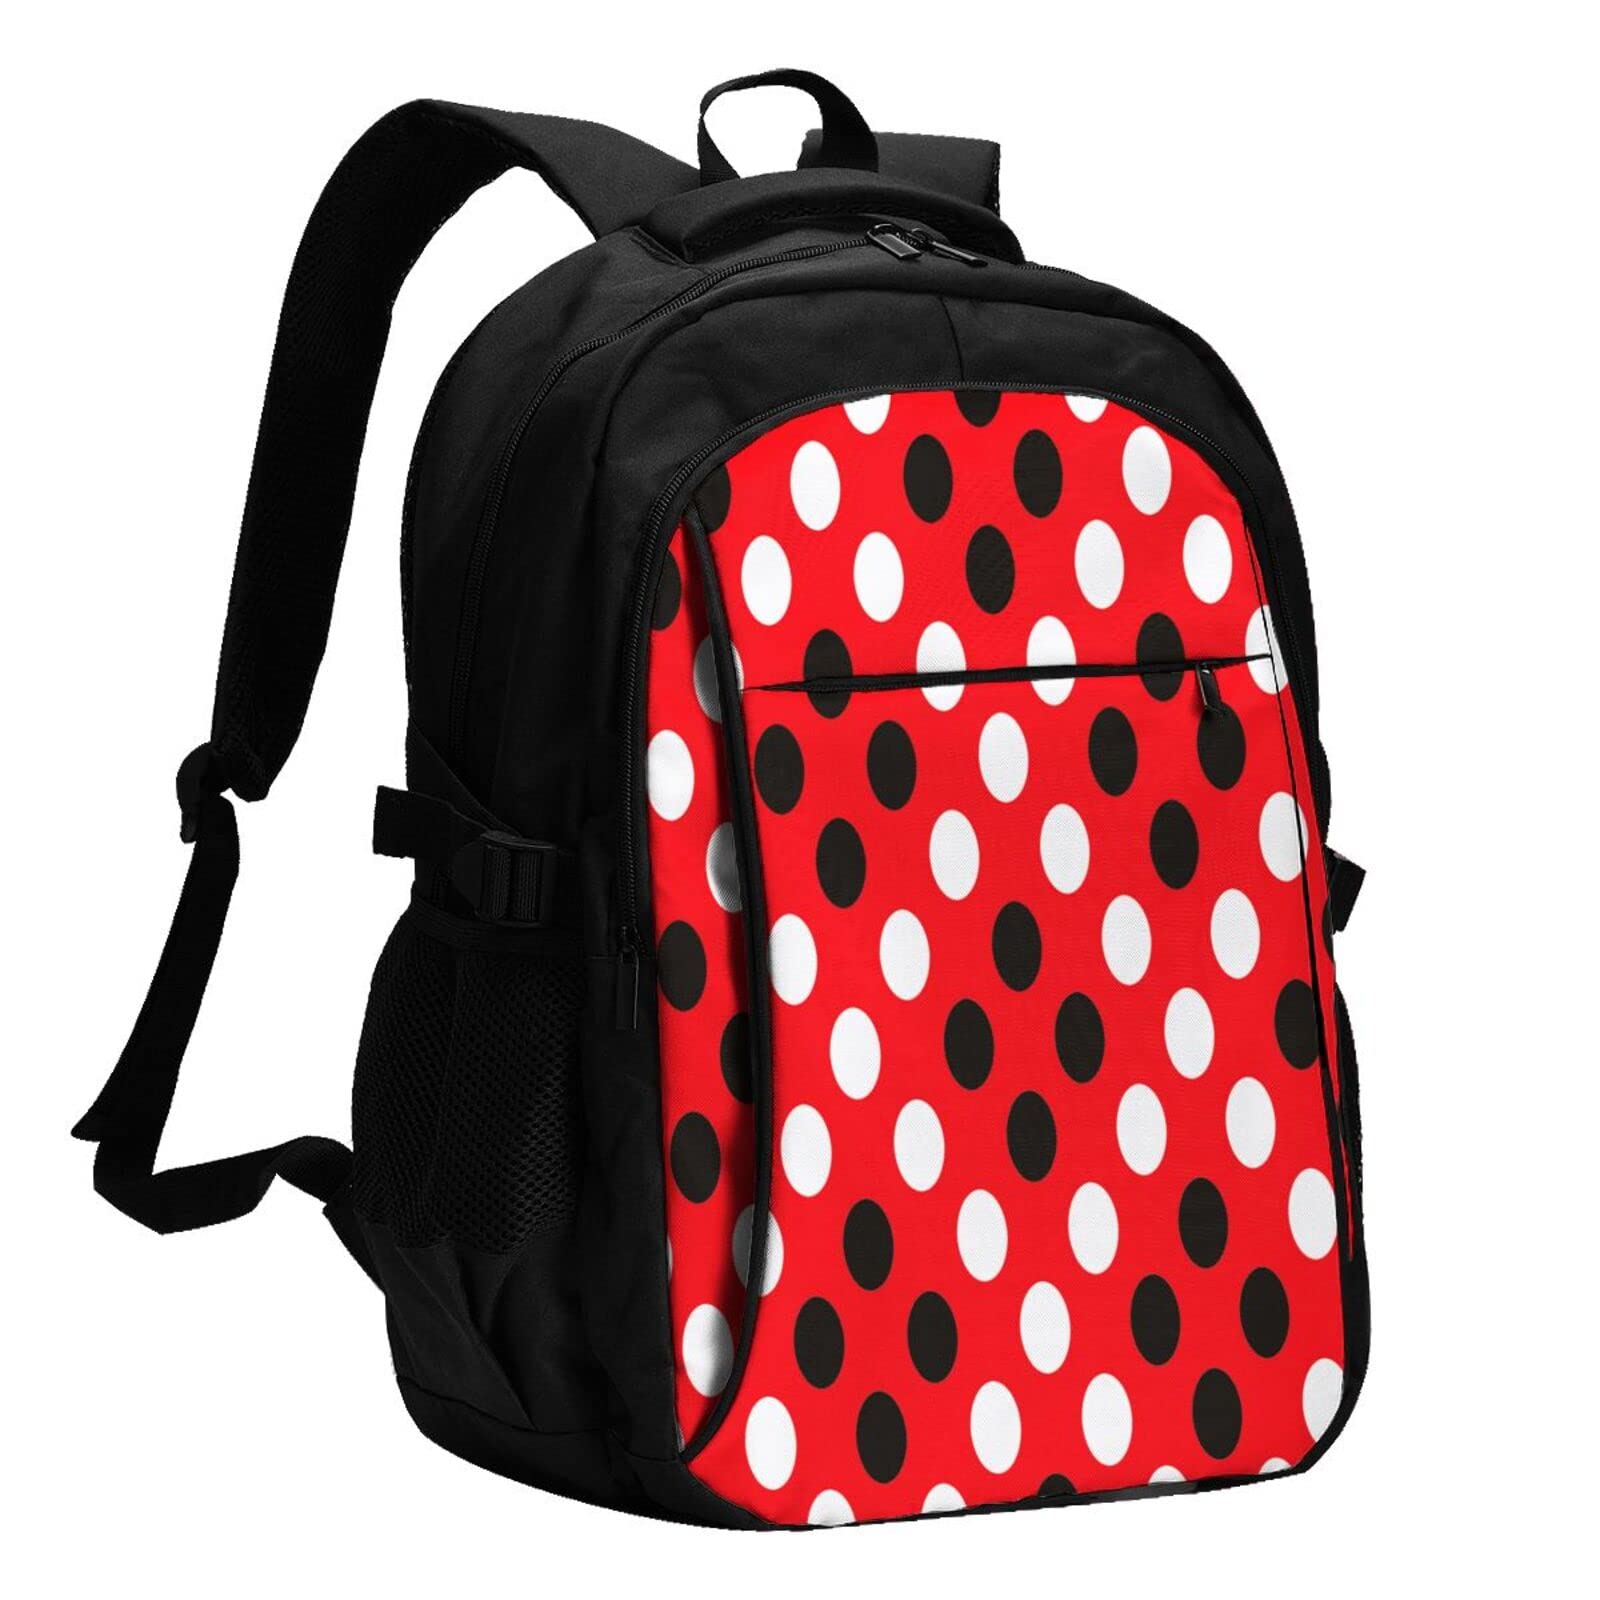 送料無料Red White Polka Dot Usb Travel Laptop Backpack Water Resistant Casual Daypack Computer Bag Business並行輸入